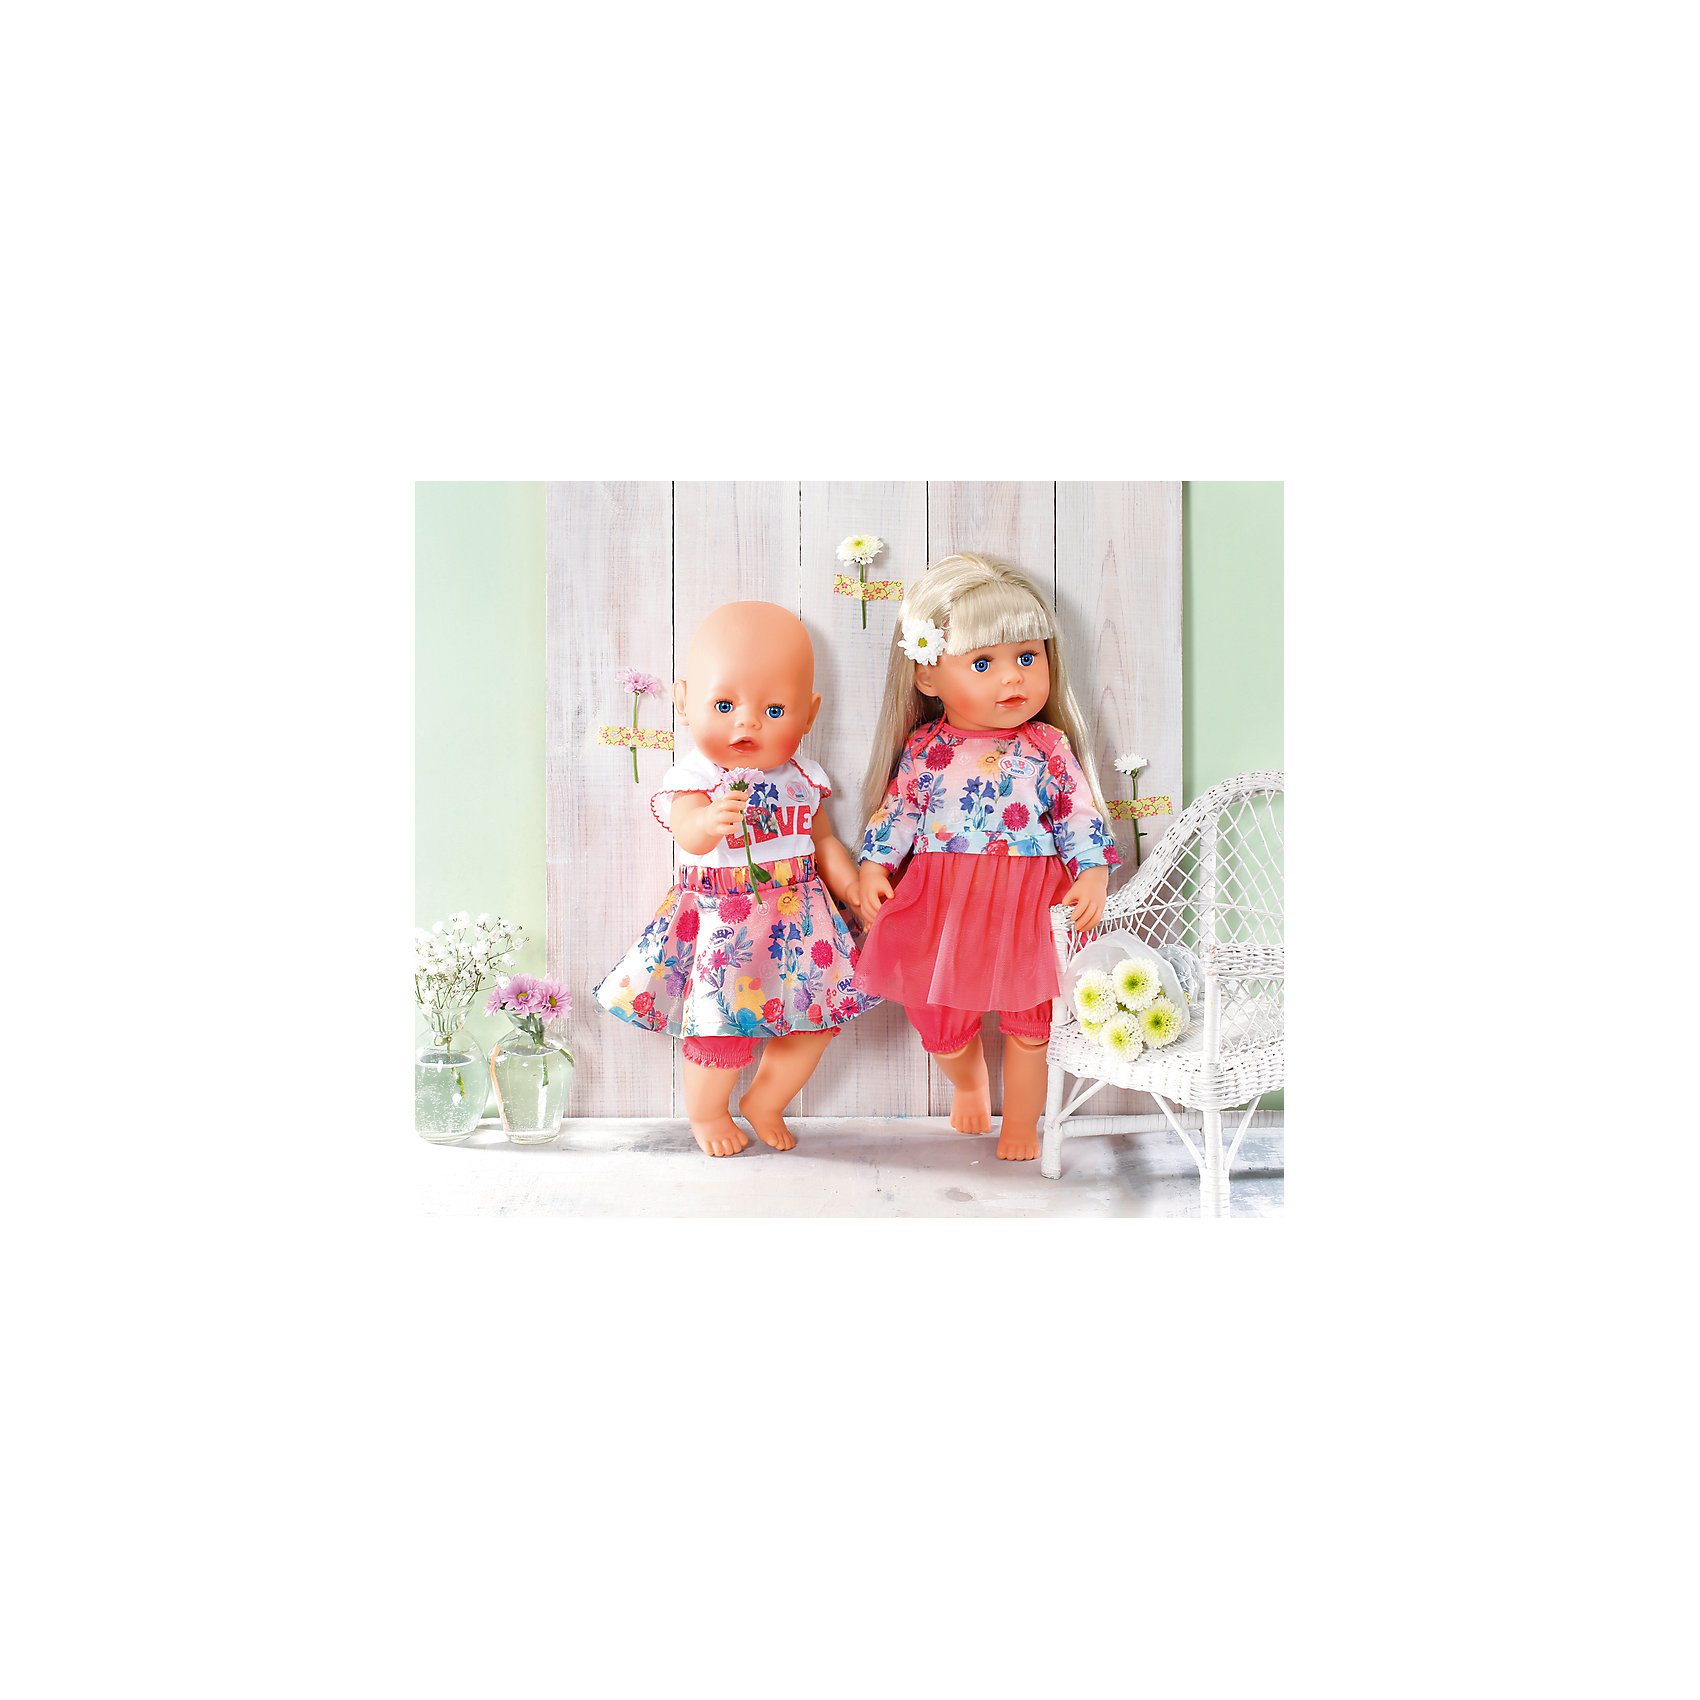 Платье Baby Born c шортиками для куклы 43 см, розовое Zapf Creation 16162520